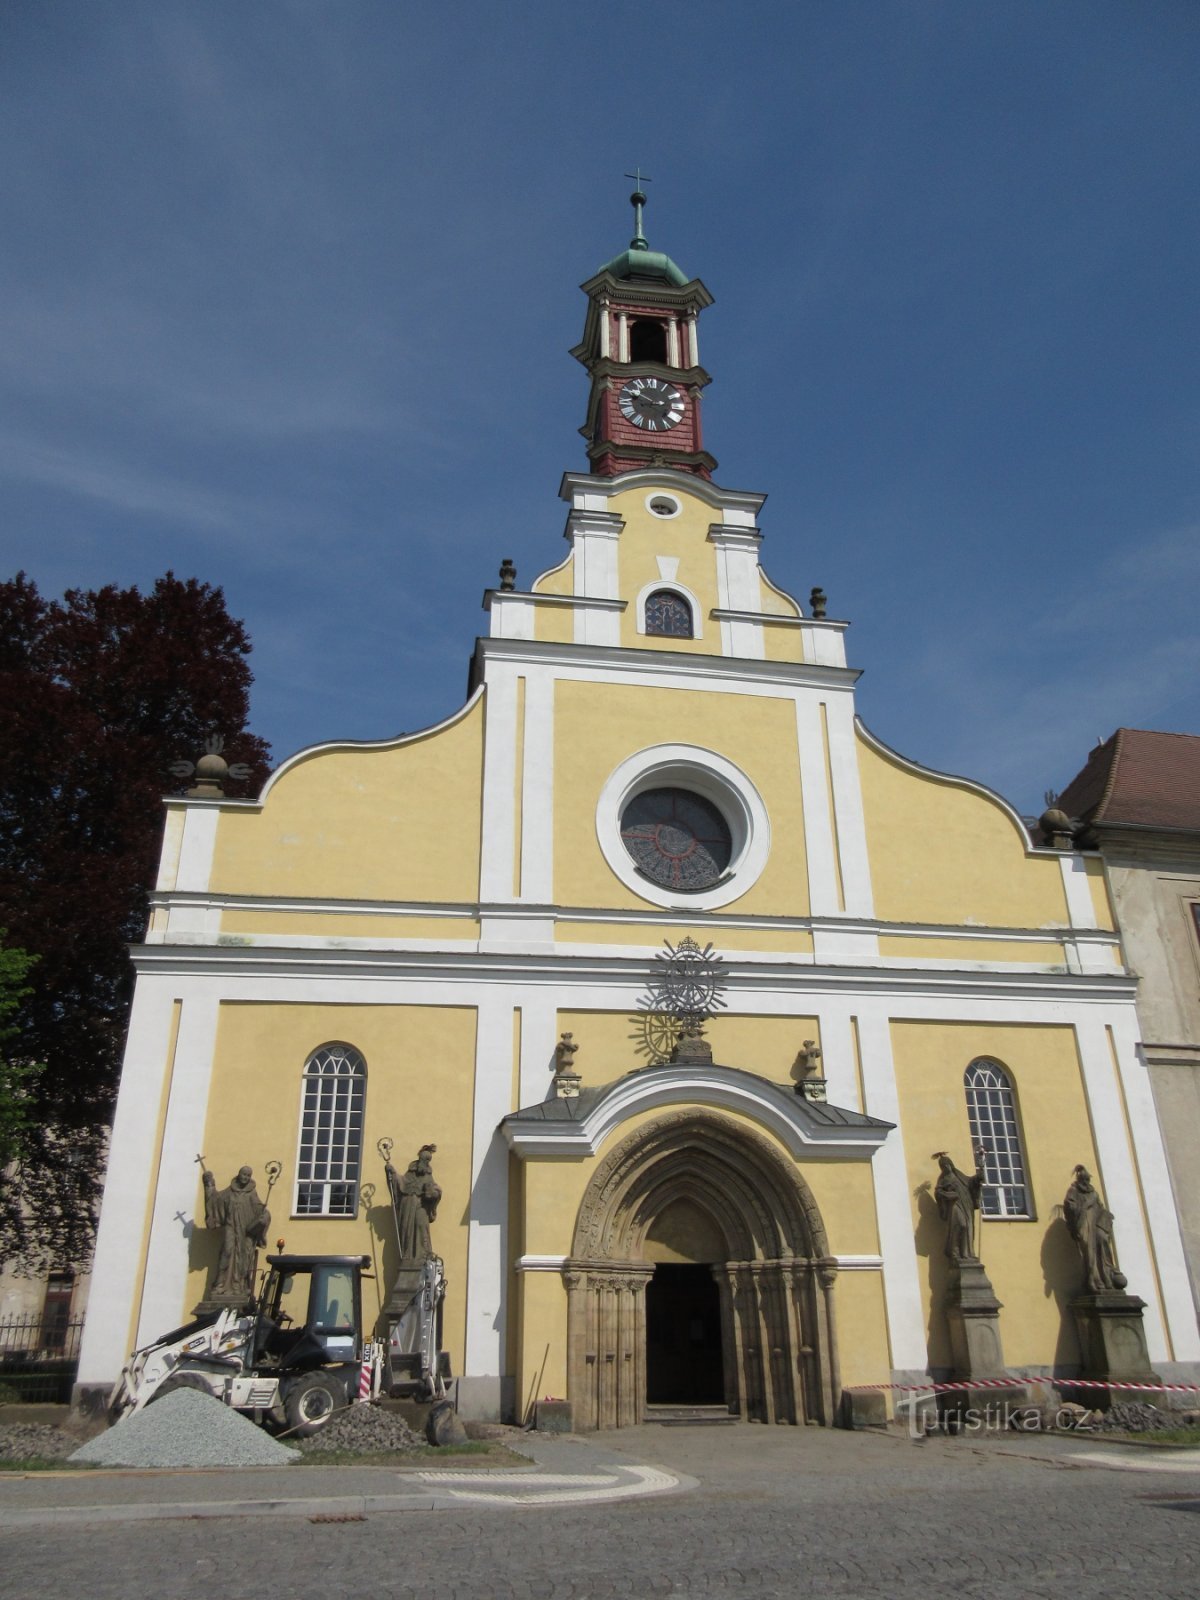 Biserica Adormirea Maicii Domnului și patru statui în stil baroc